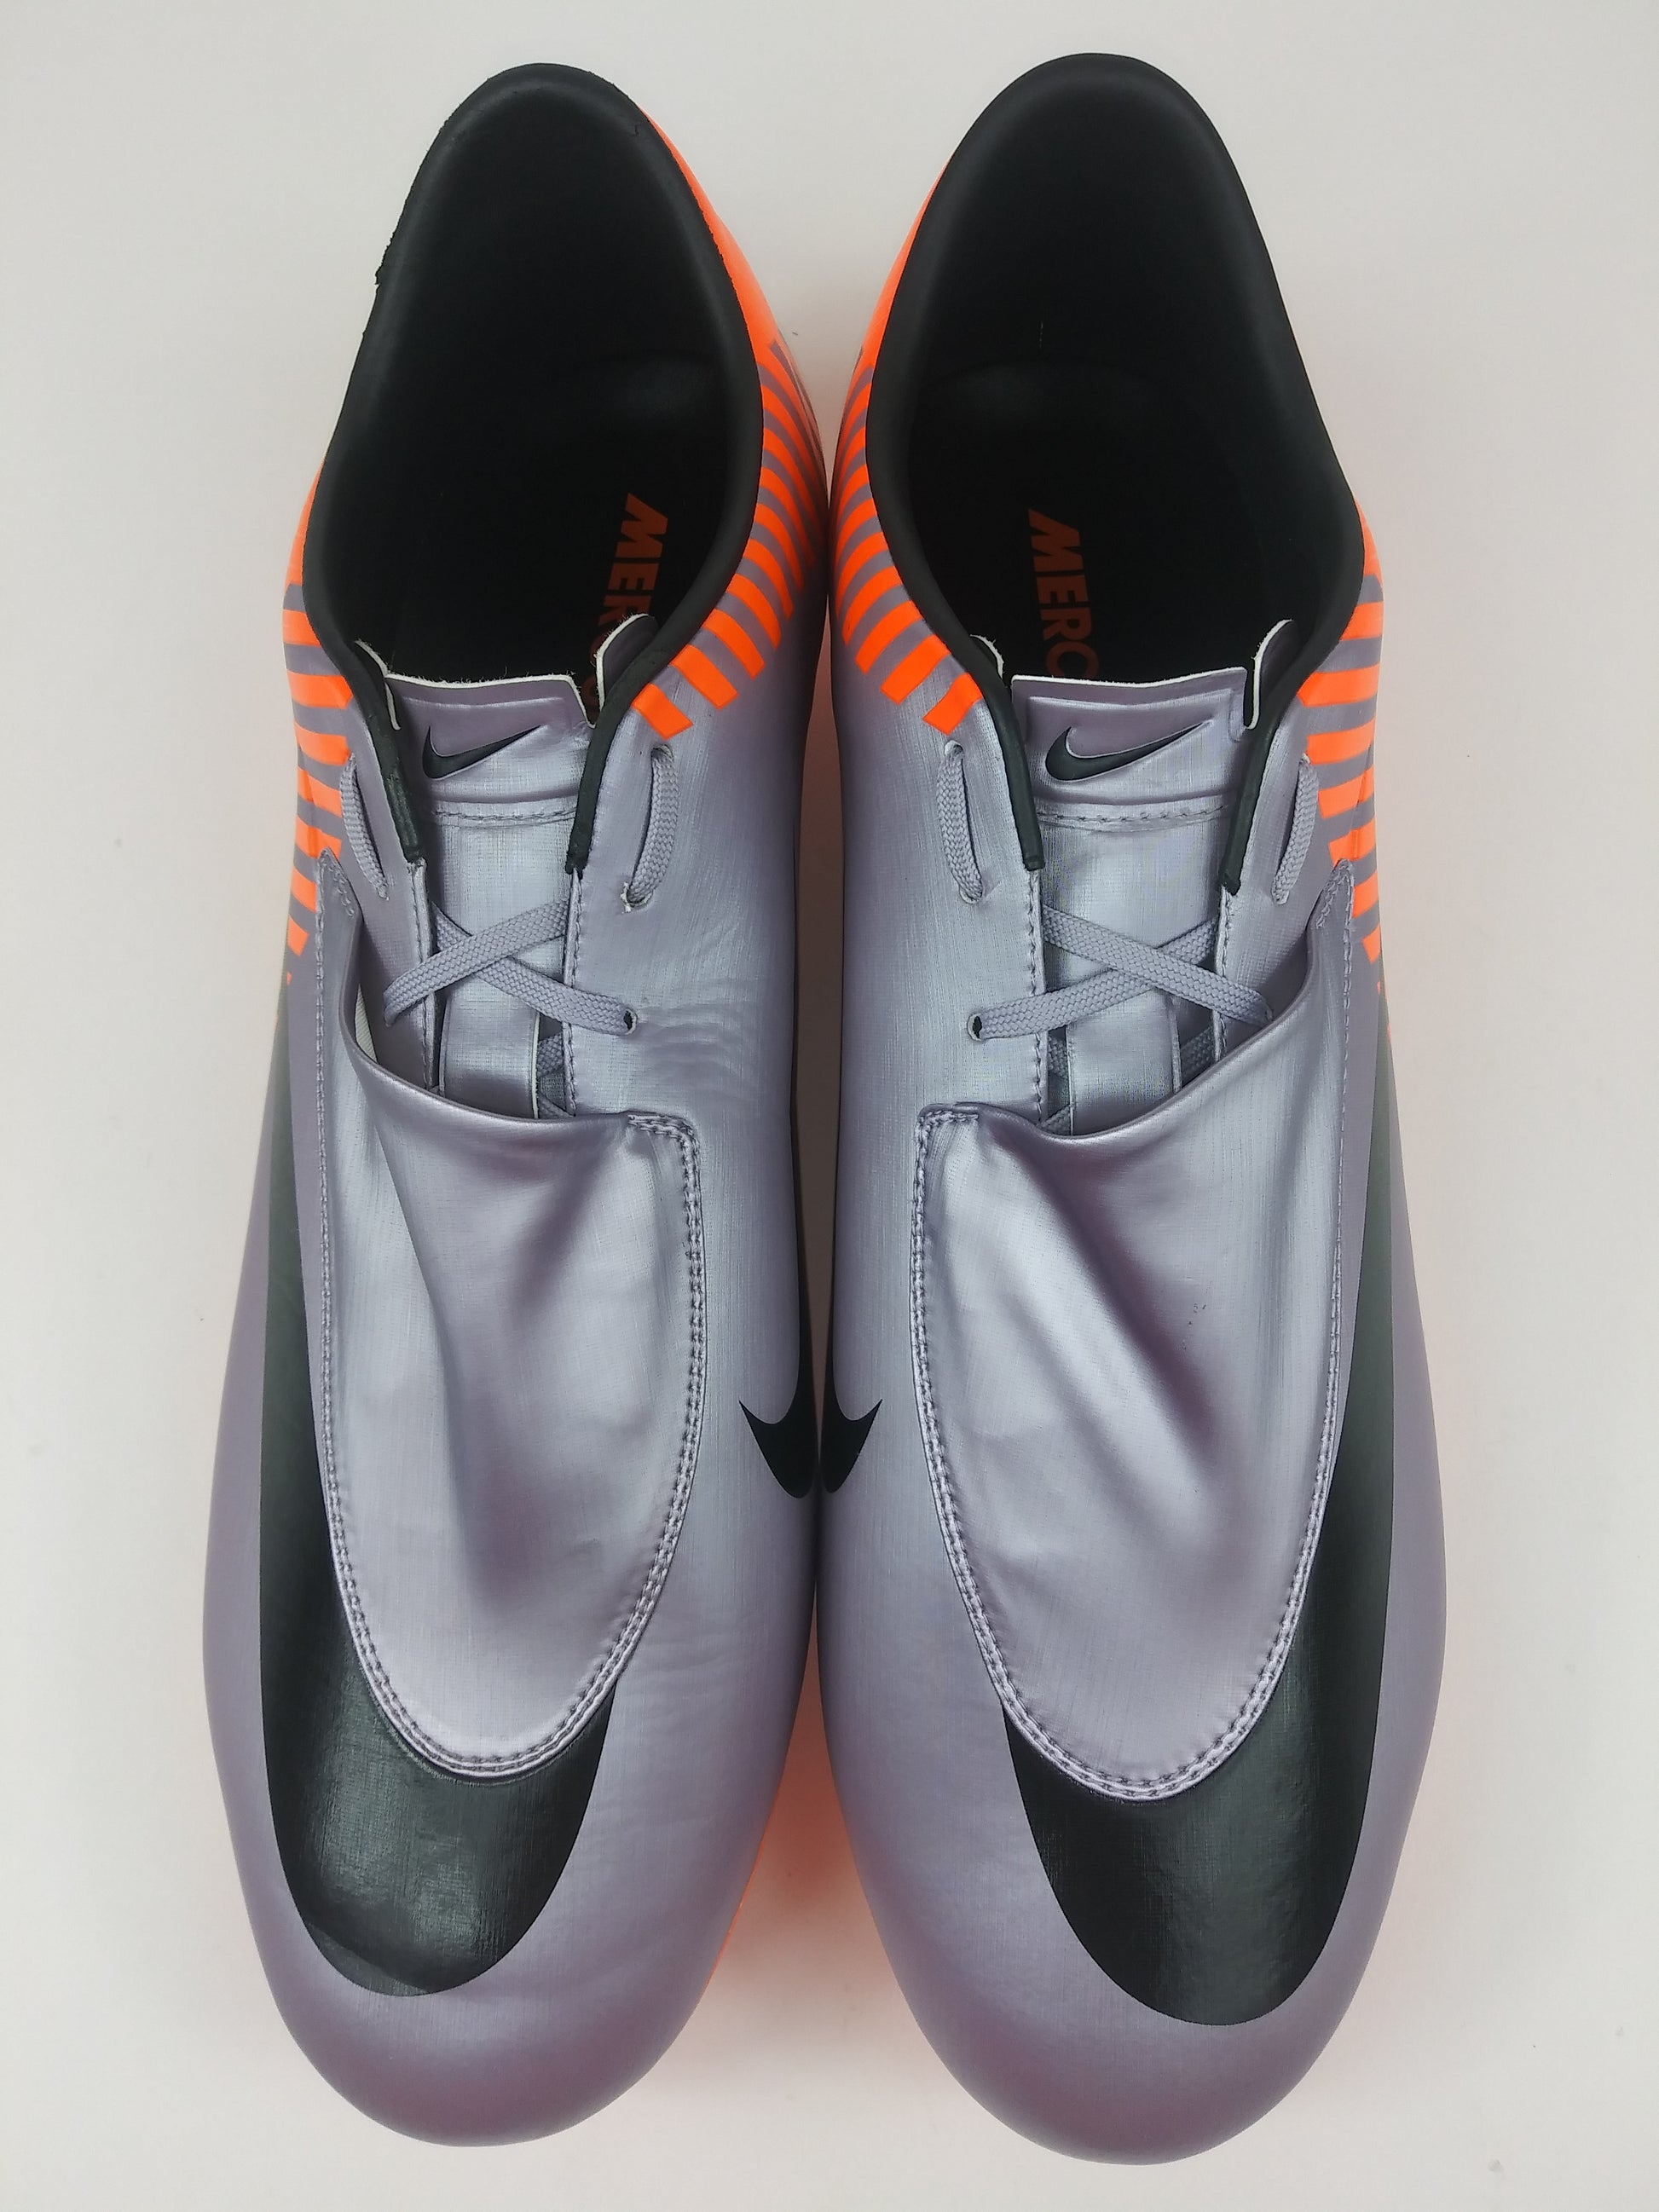 Regeneratie Het eens zijn met plotseling Nike Mercurial Vapor VI FG WC Purple Orange – Villegas Footwear